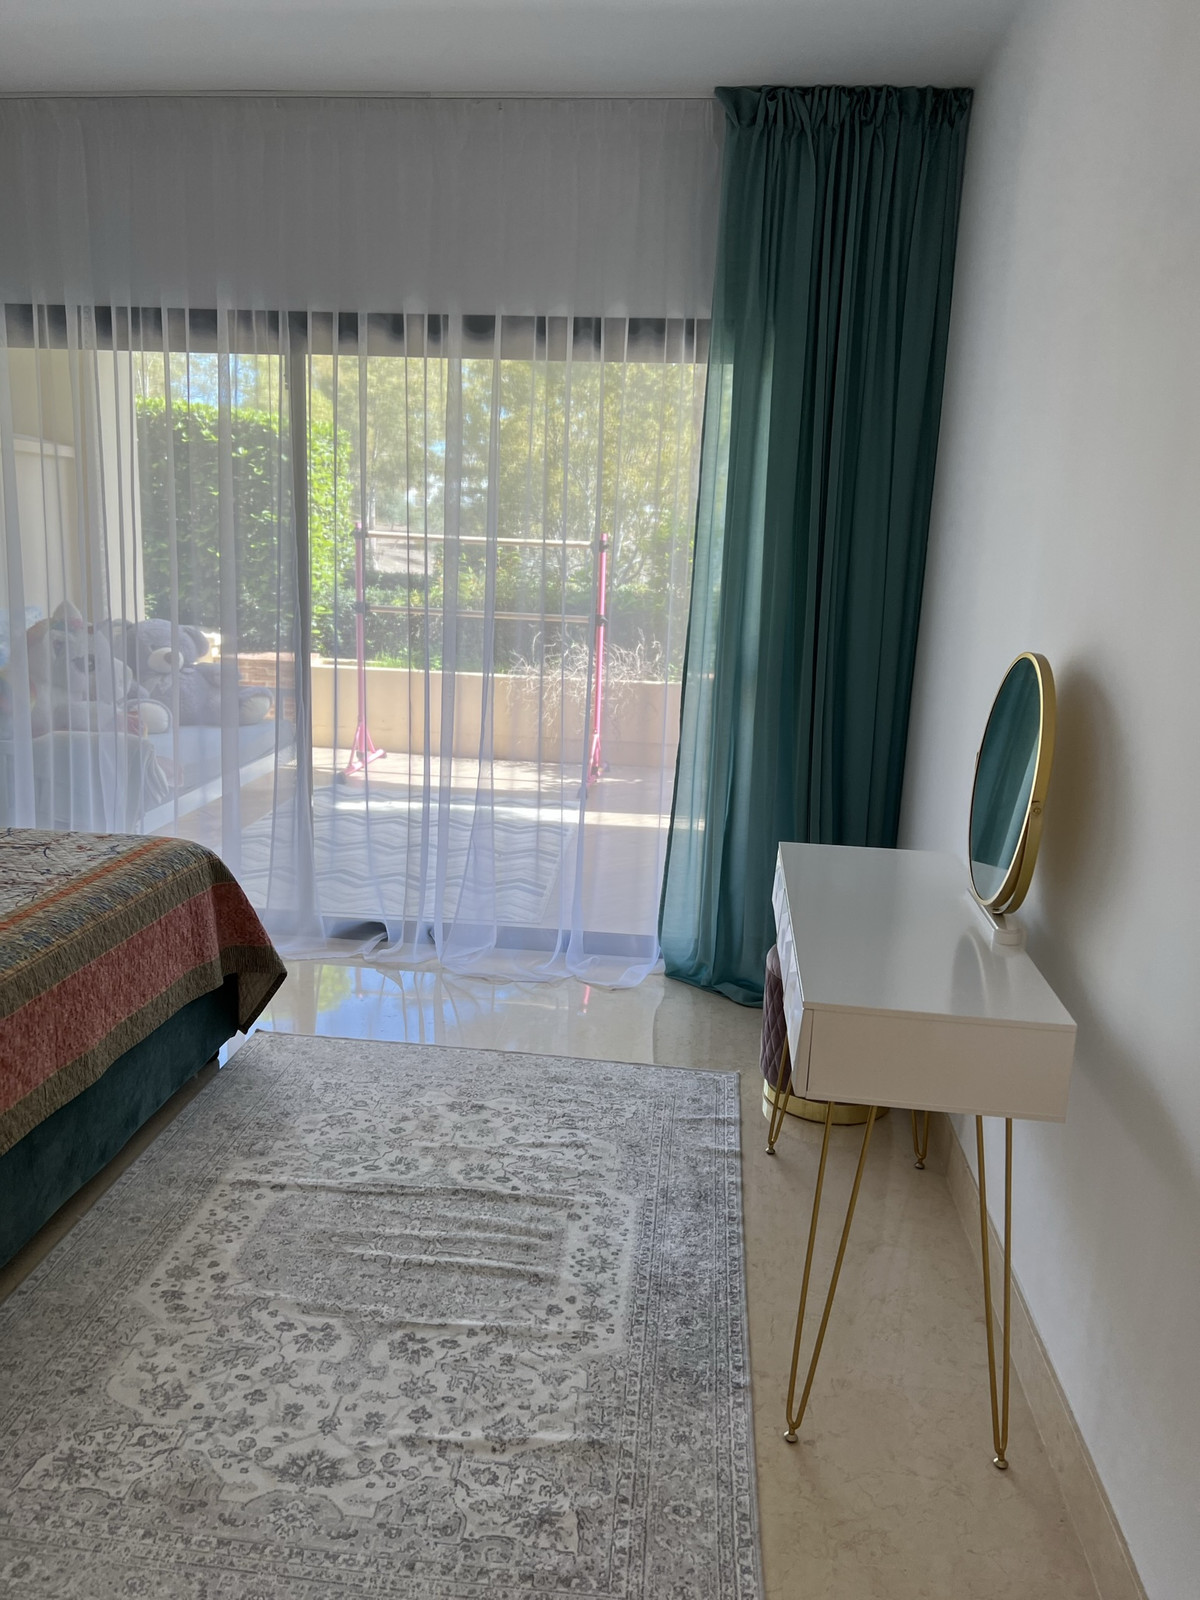 4 bed Property For Sale in Benahavis, Costa del Sol - thumb 13